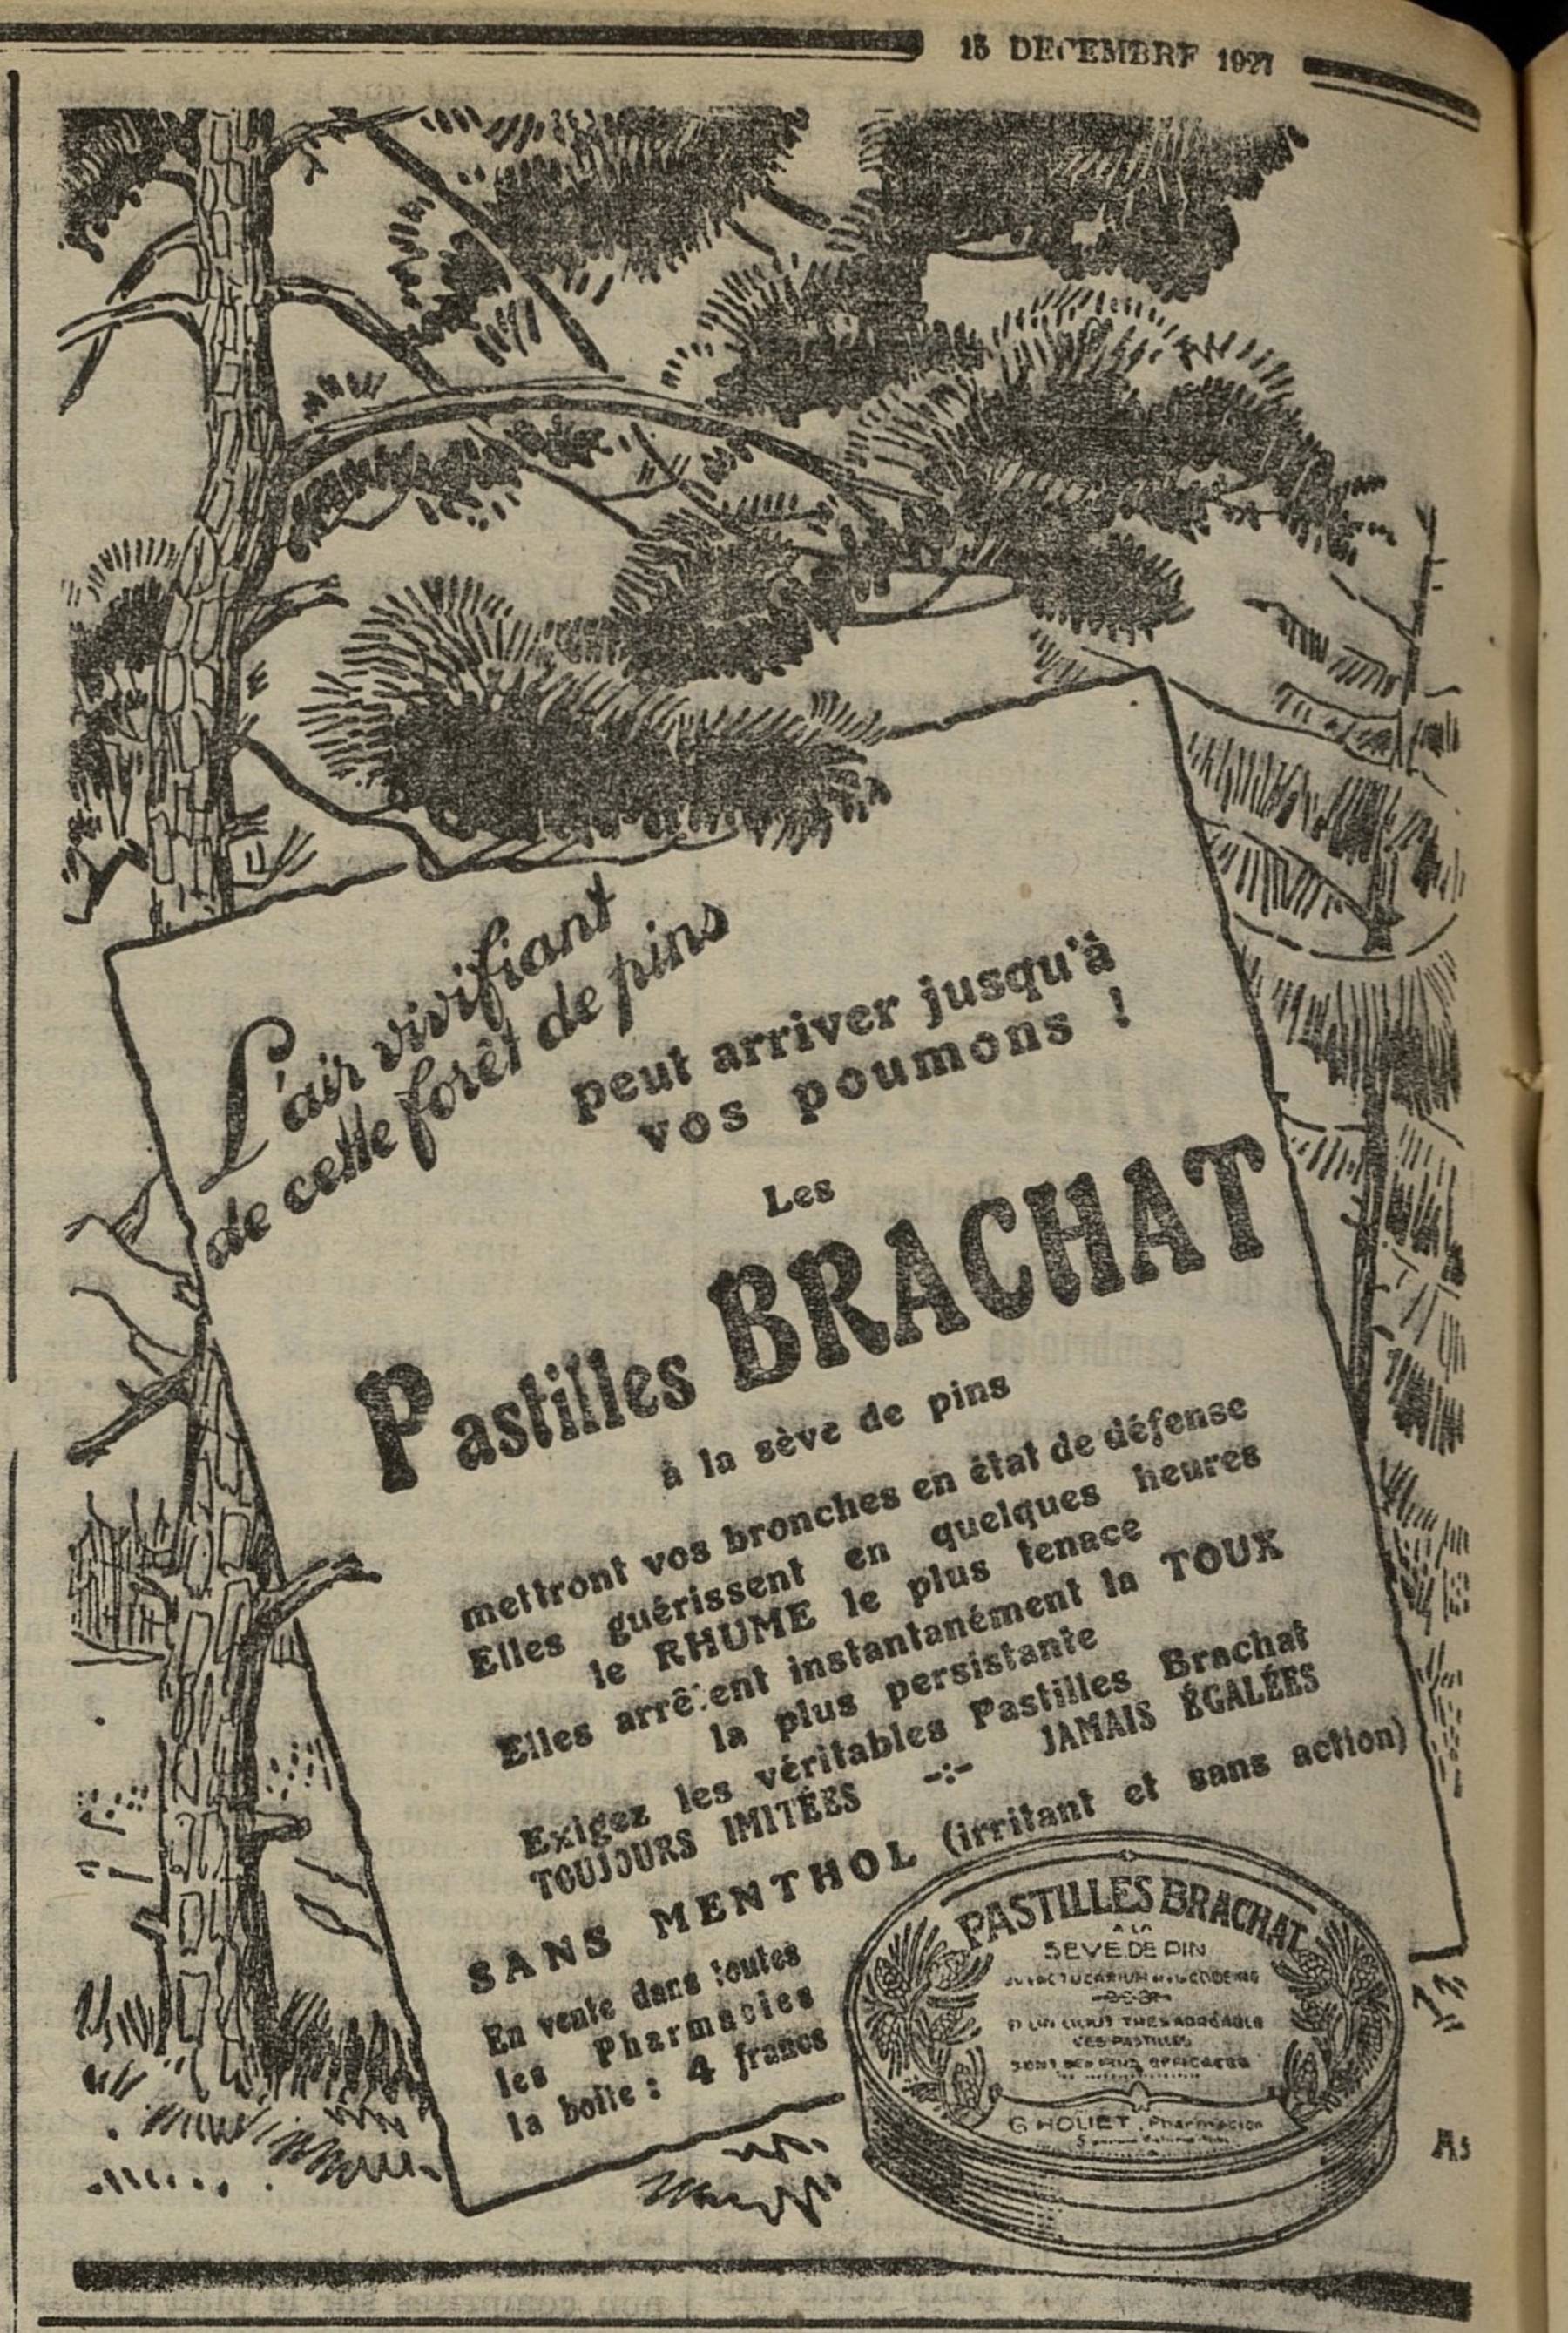 Contenu du Pastilles Brachat